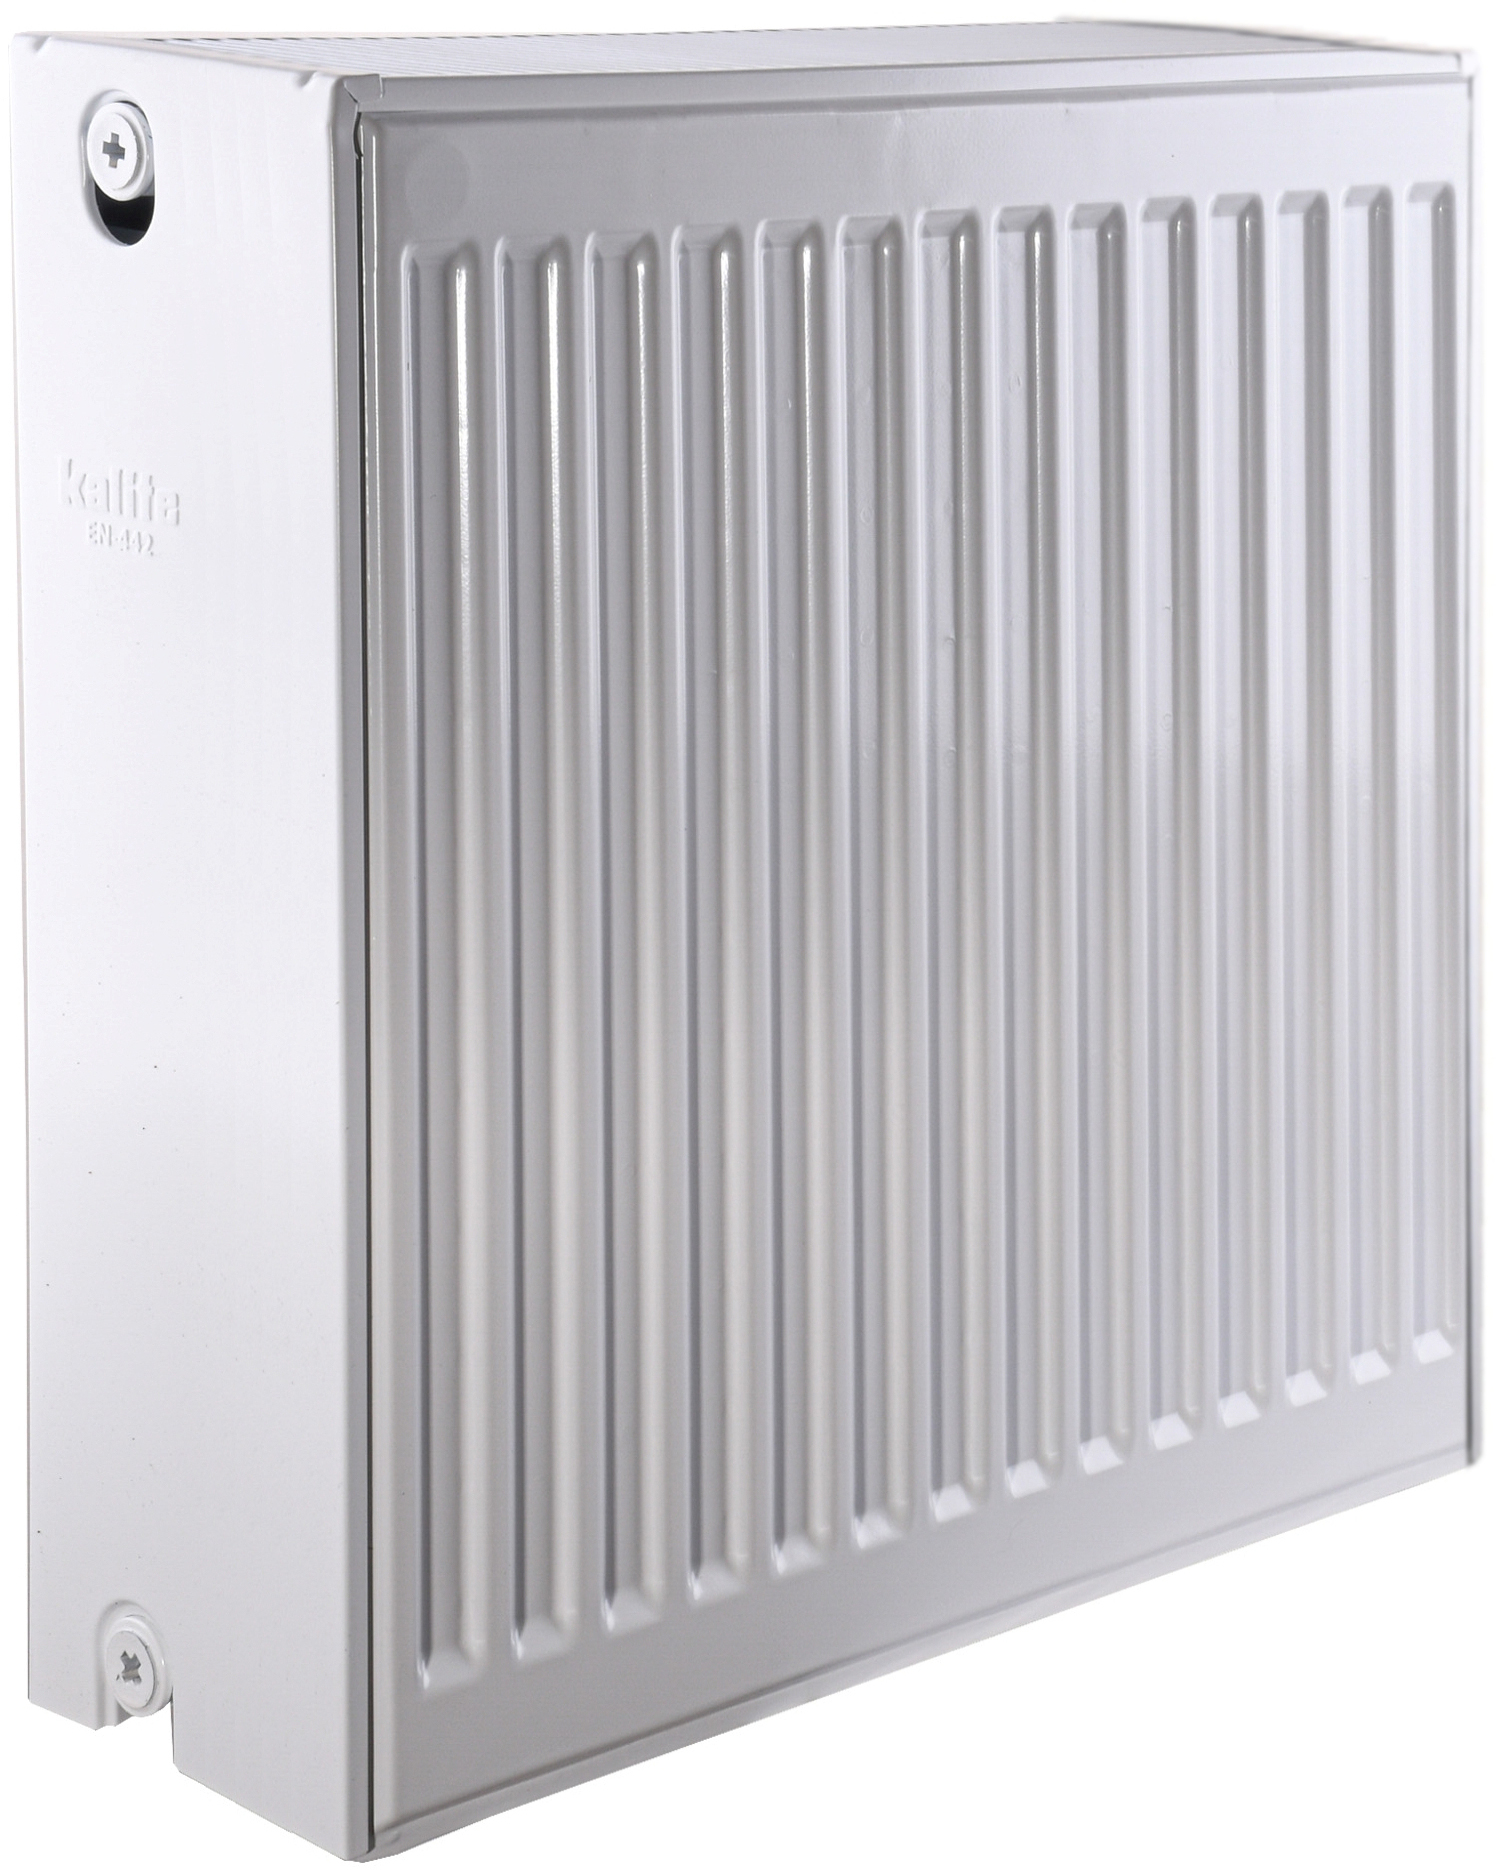 Радиатор для отопления Kalite 33 бок 500x500